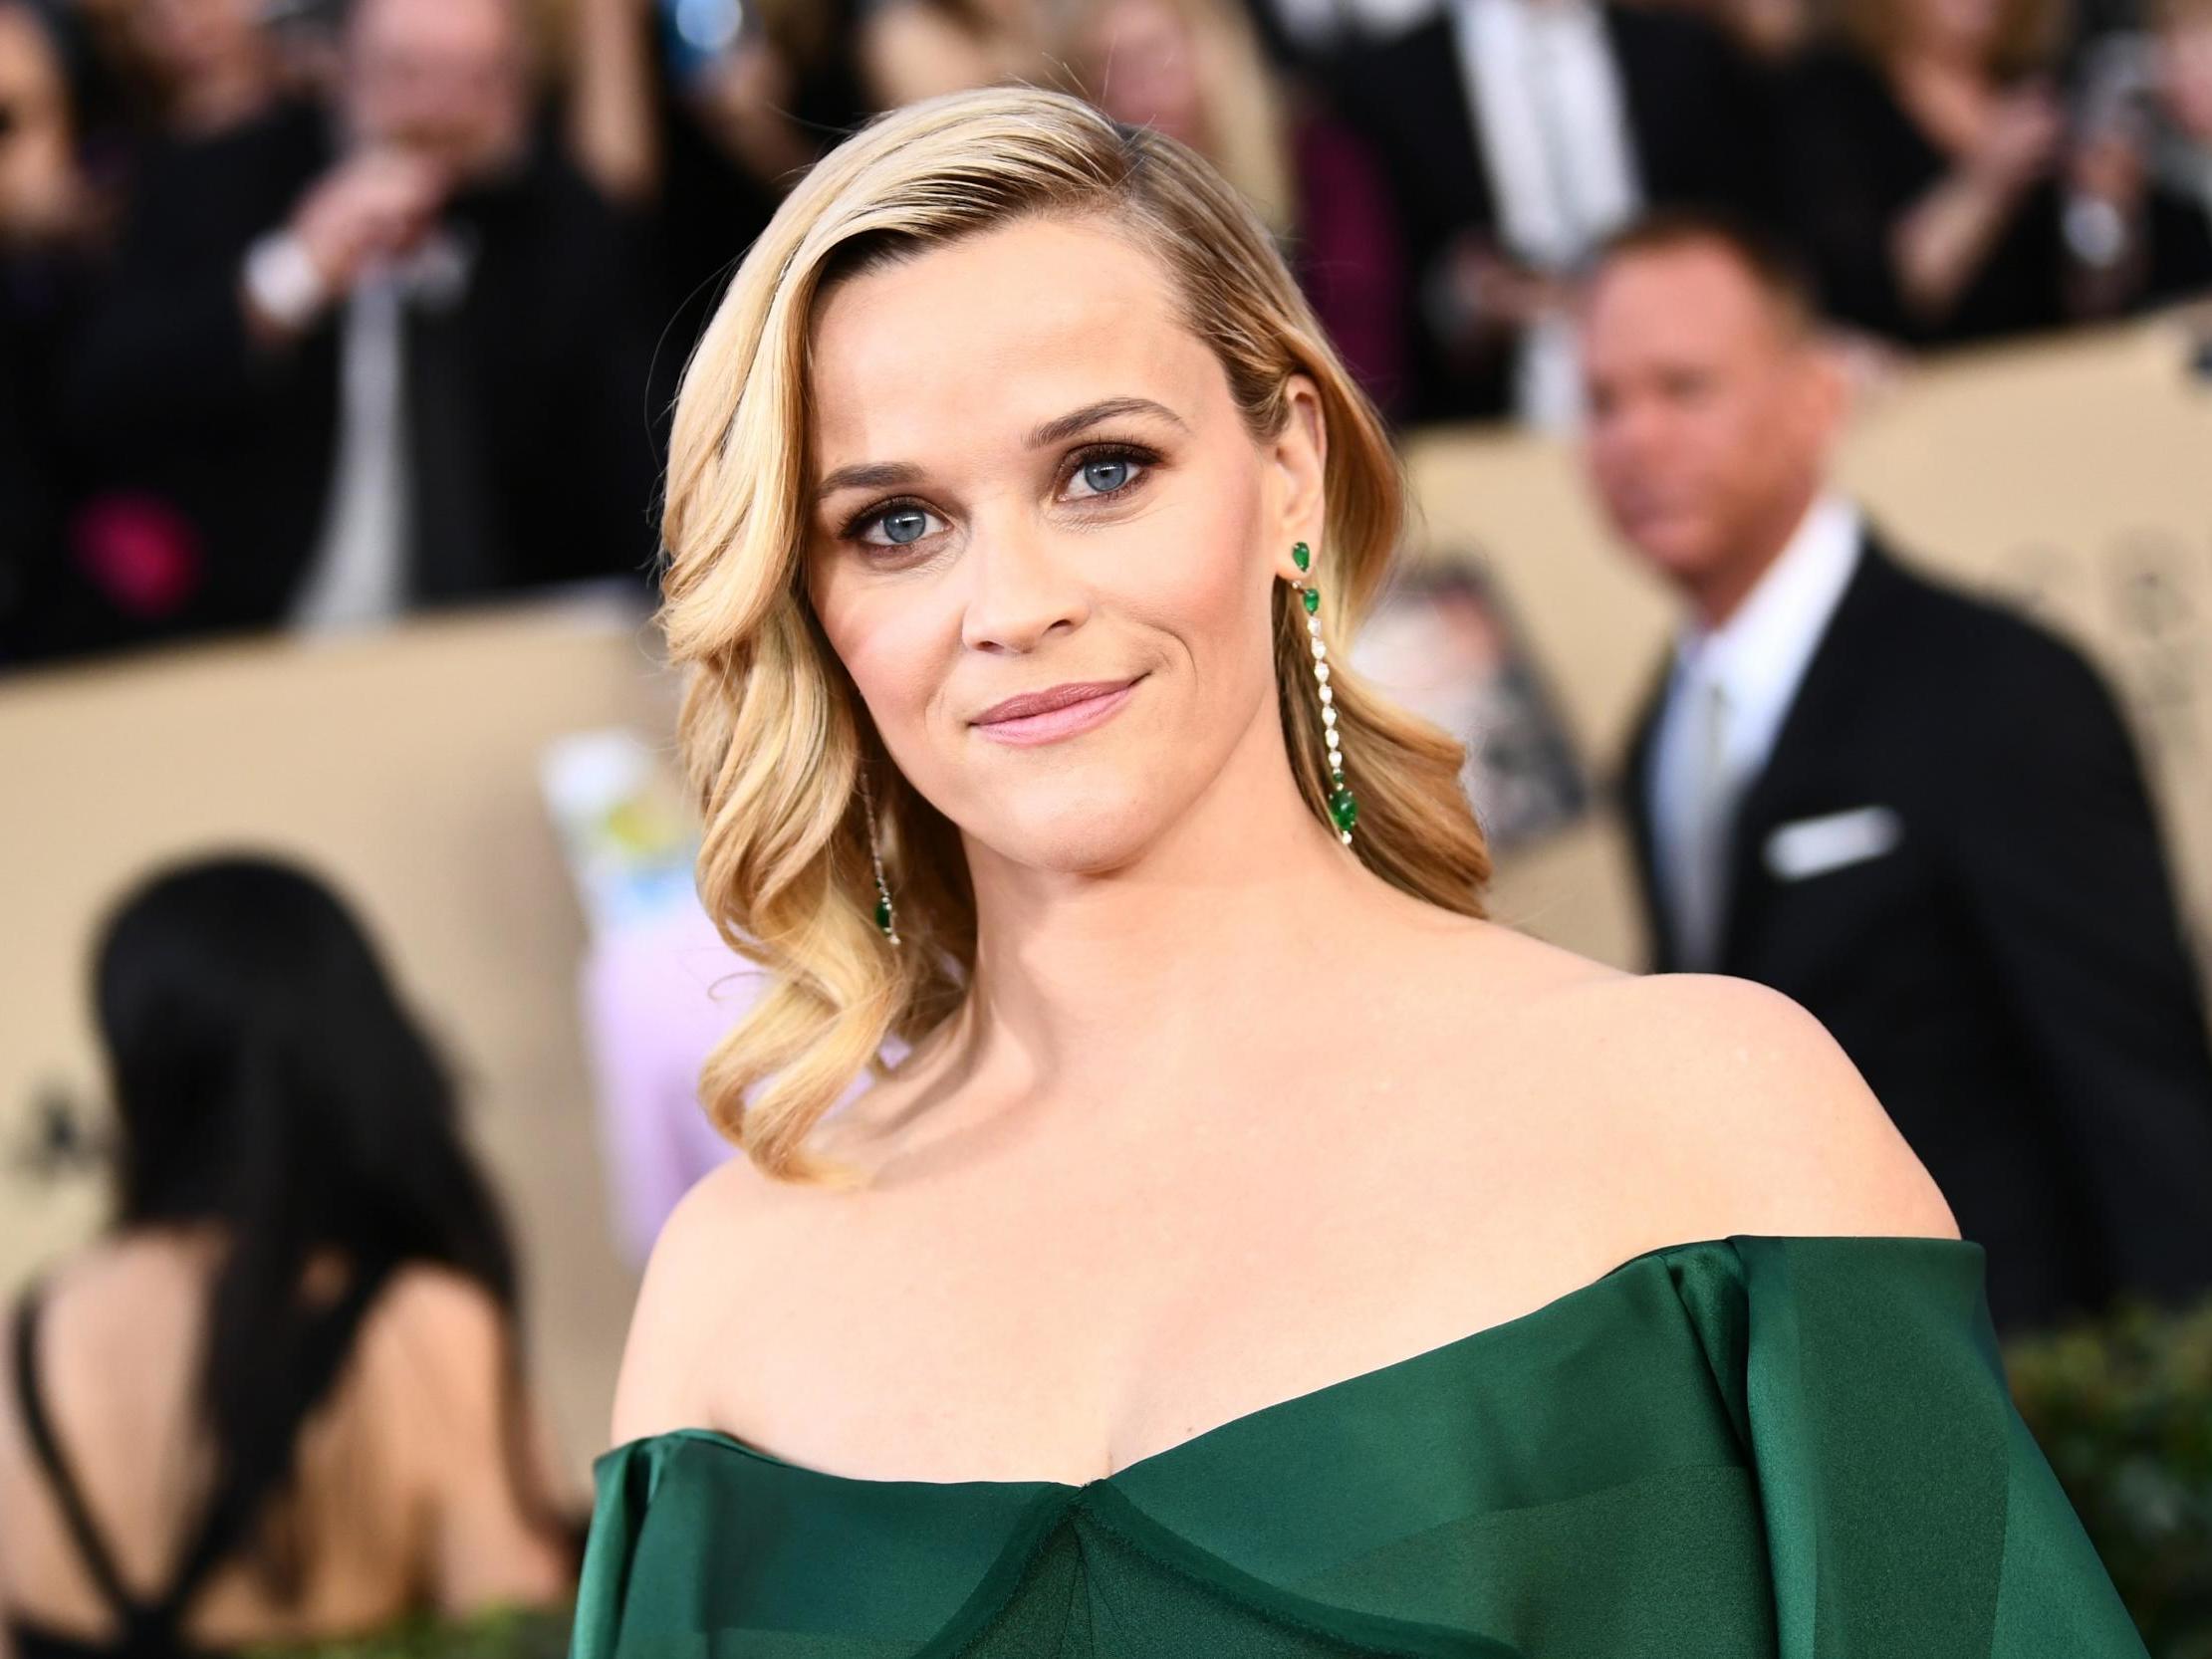 Reese Witherspoon habló sobre cómo era equilibrar el trabajo y la maternidad cuando era una madre joven en Hollywood.